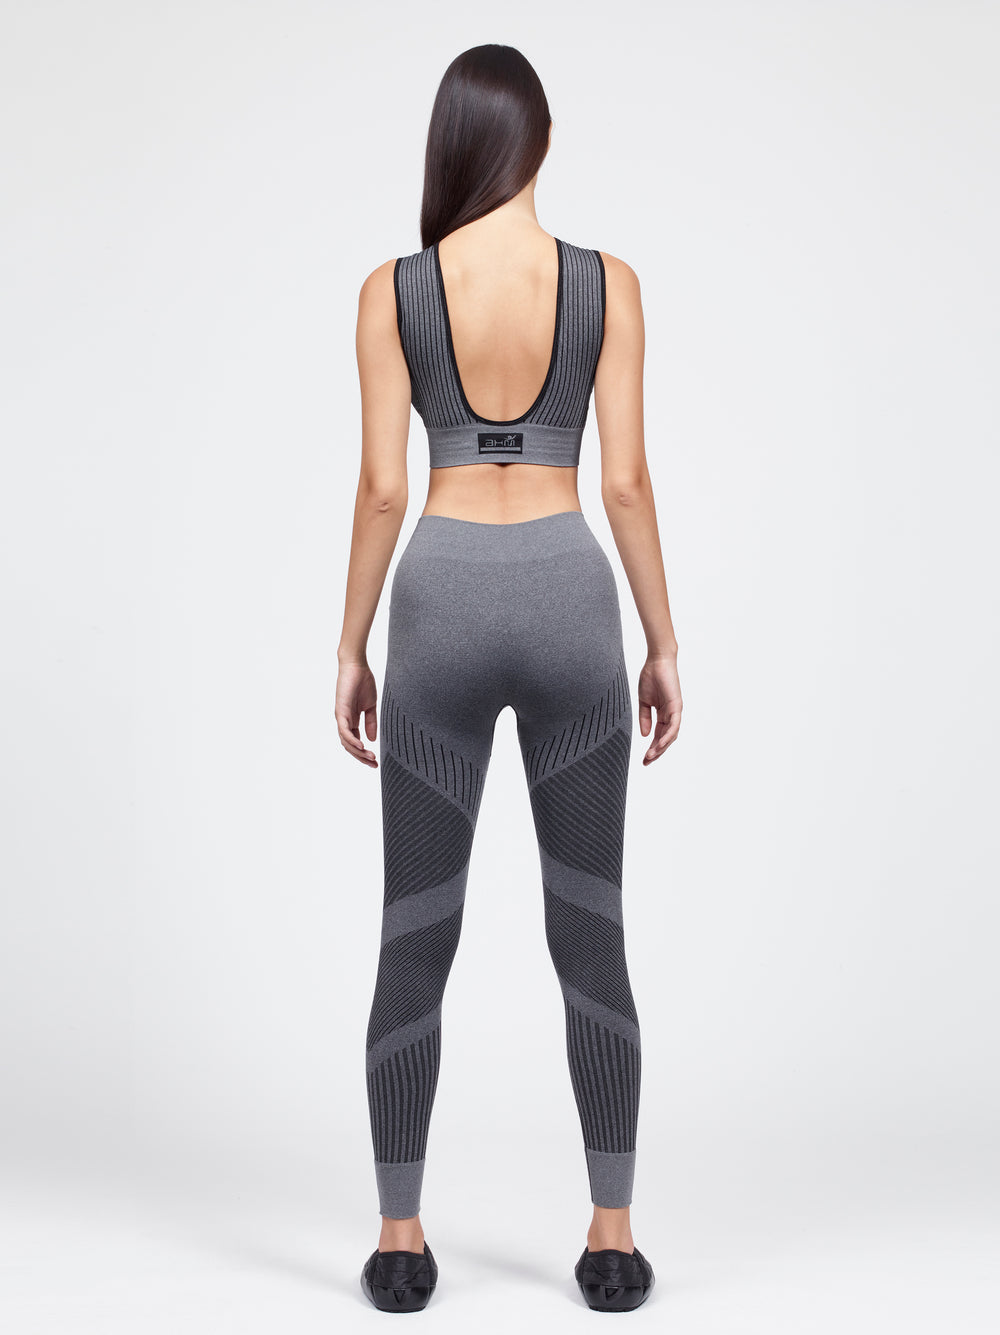 Bare back sport bra with flow leggings set gray black